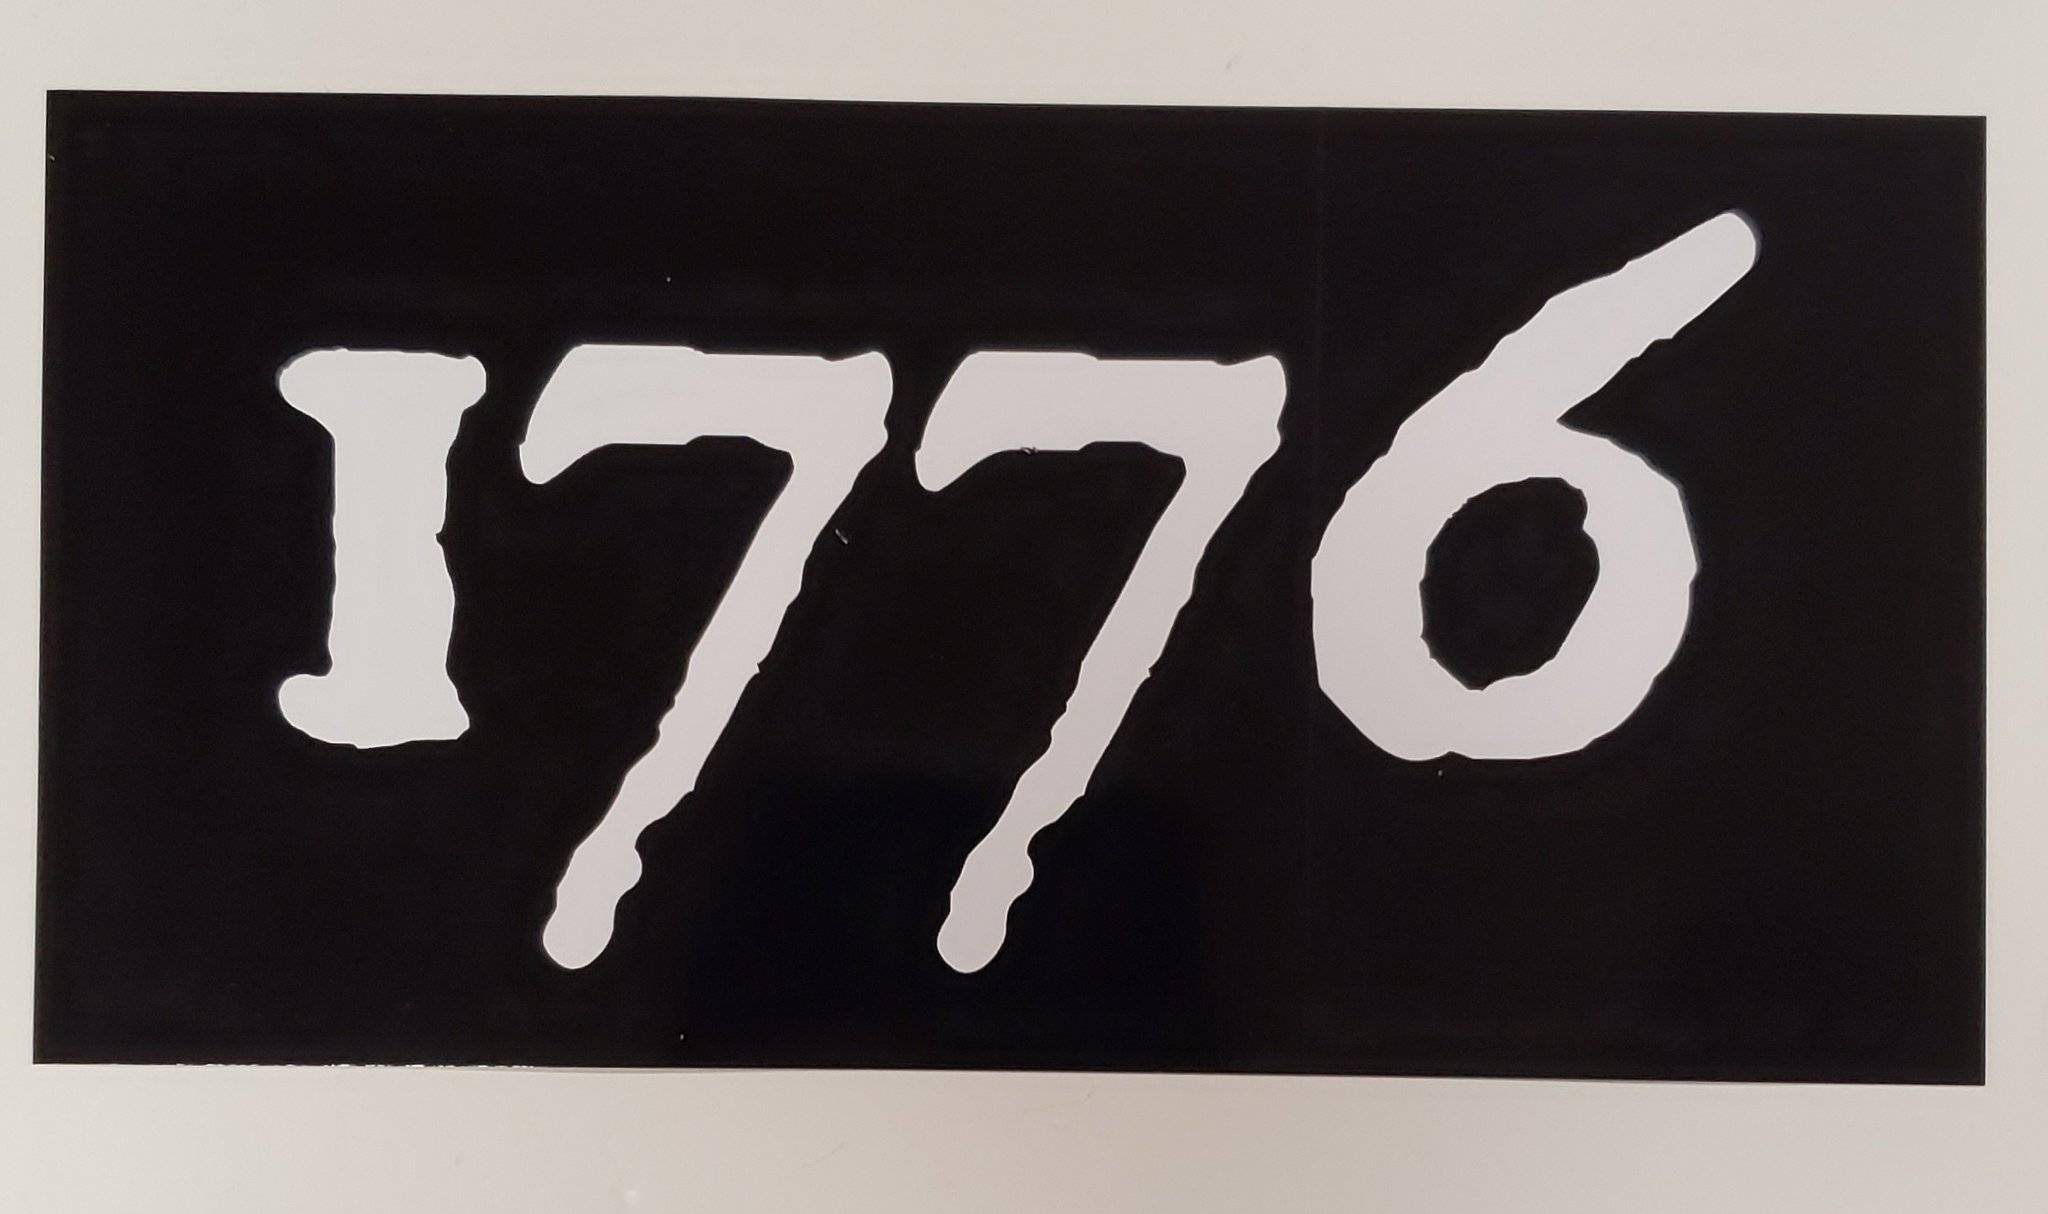 1776 Bumper Sticker.